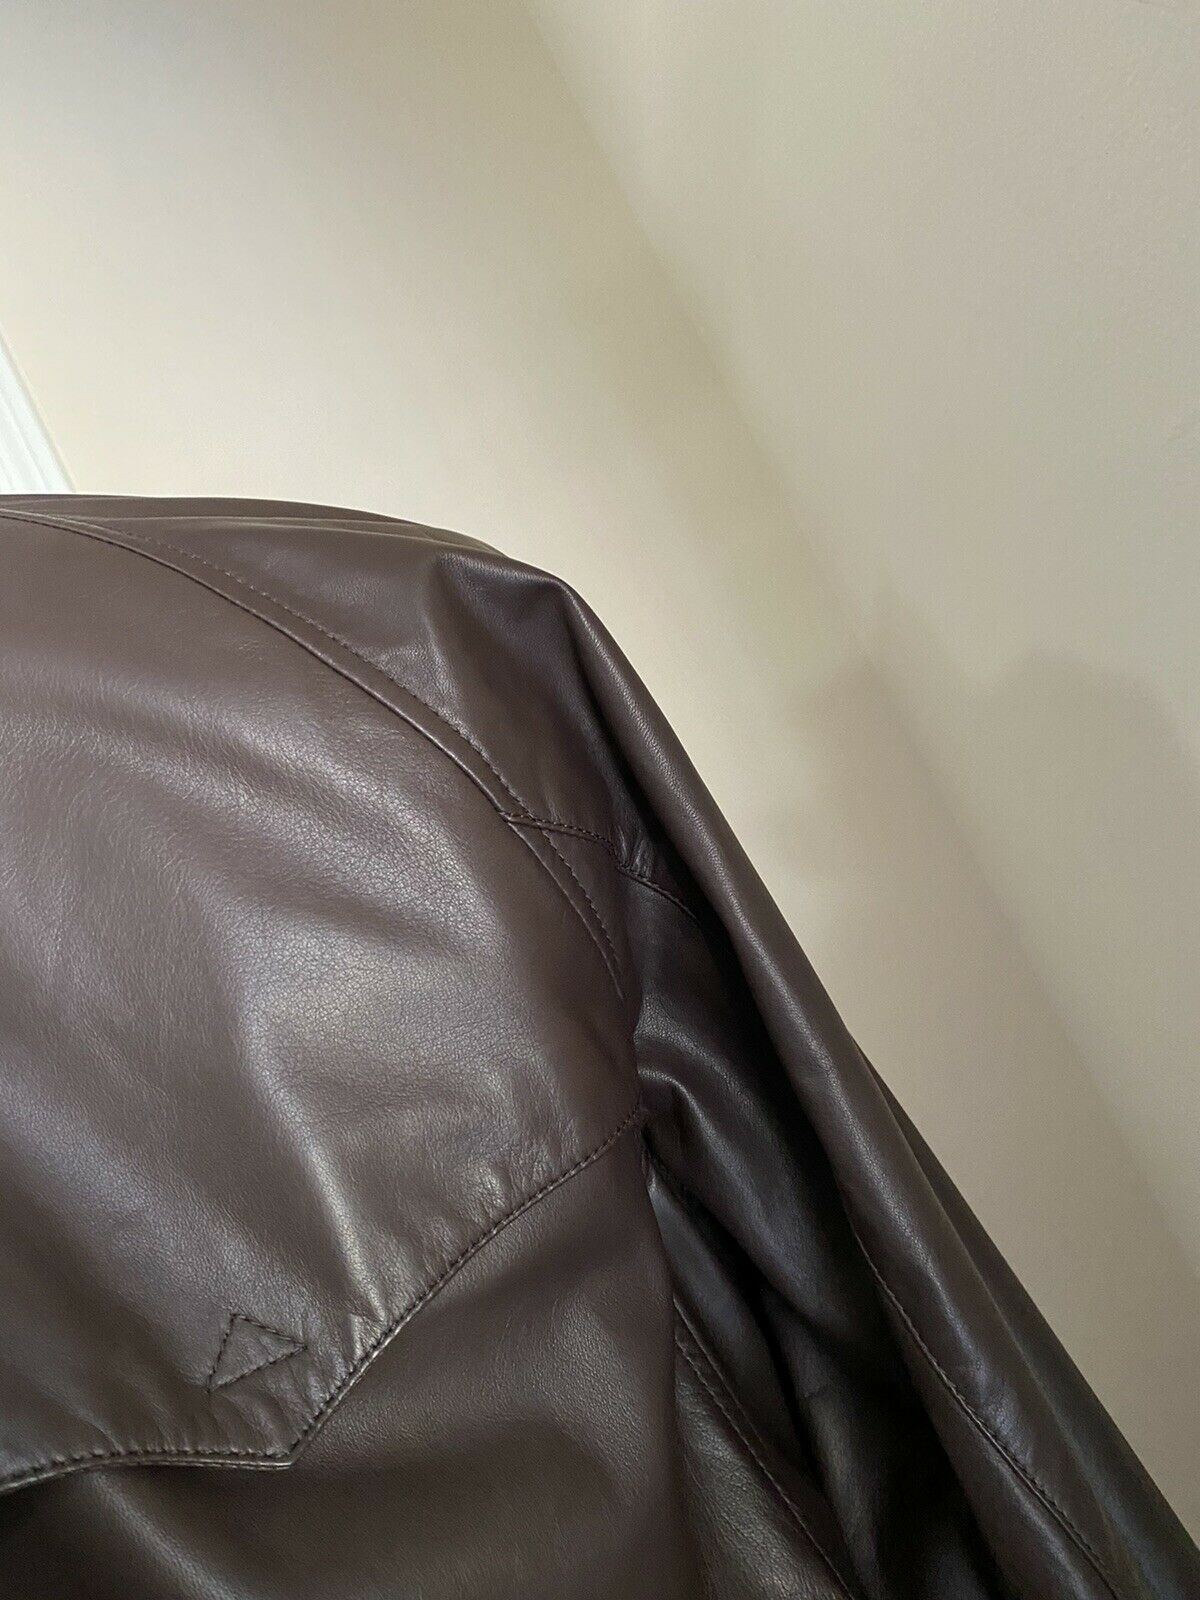 New $3295 Ralph Lauren Purple Label Men Pionge Leather Jacket Coat Brown M Italy